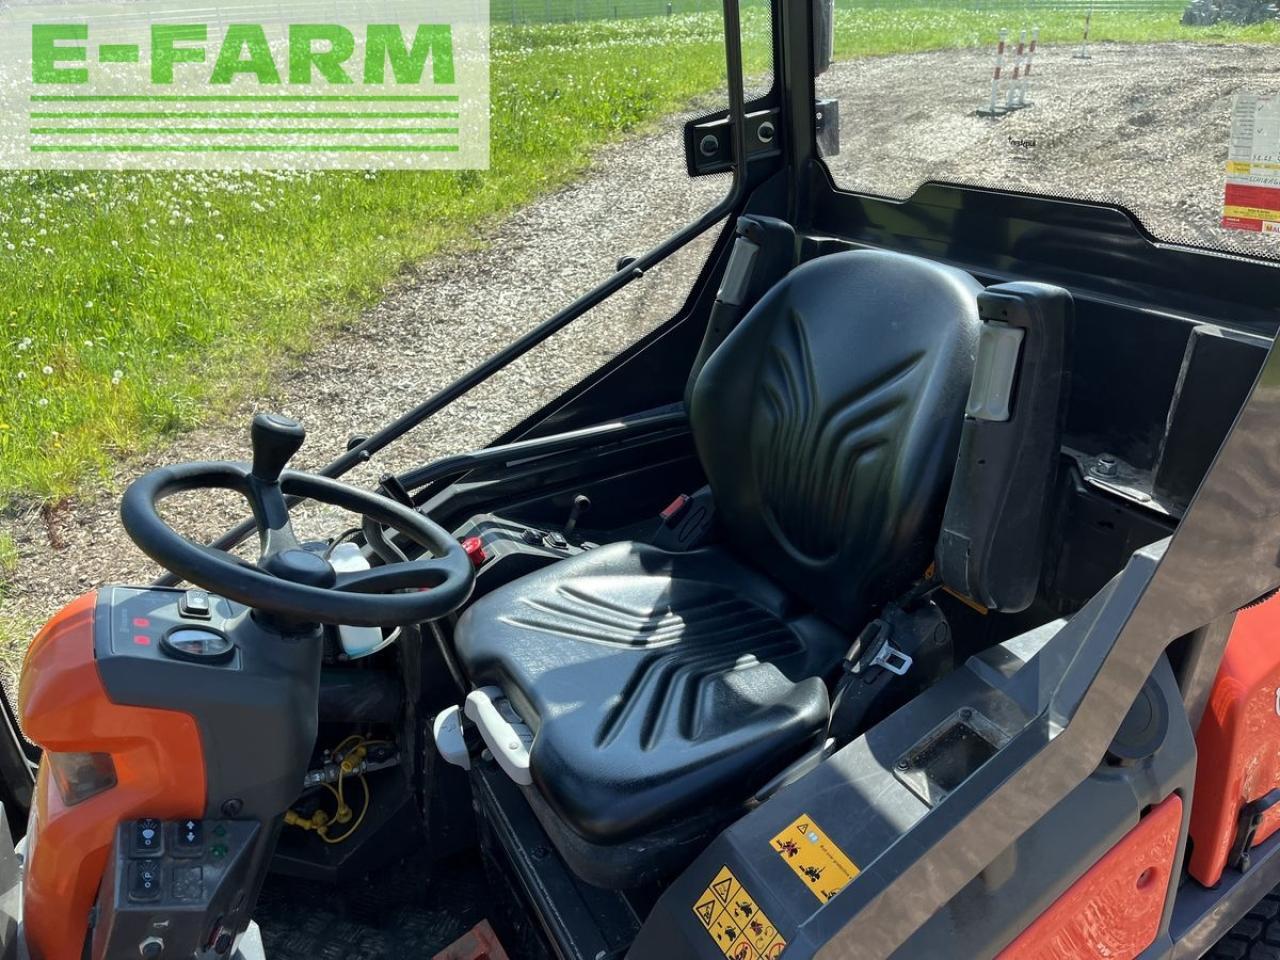 Farm tractor Husqvarna p525 d mit kabine und schleglmäher: picture 14